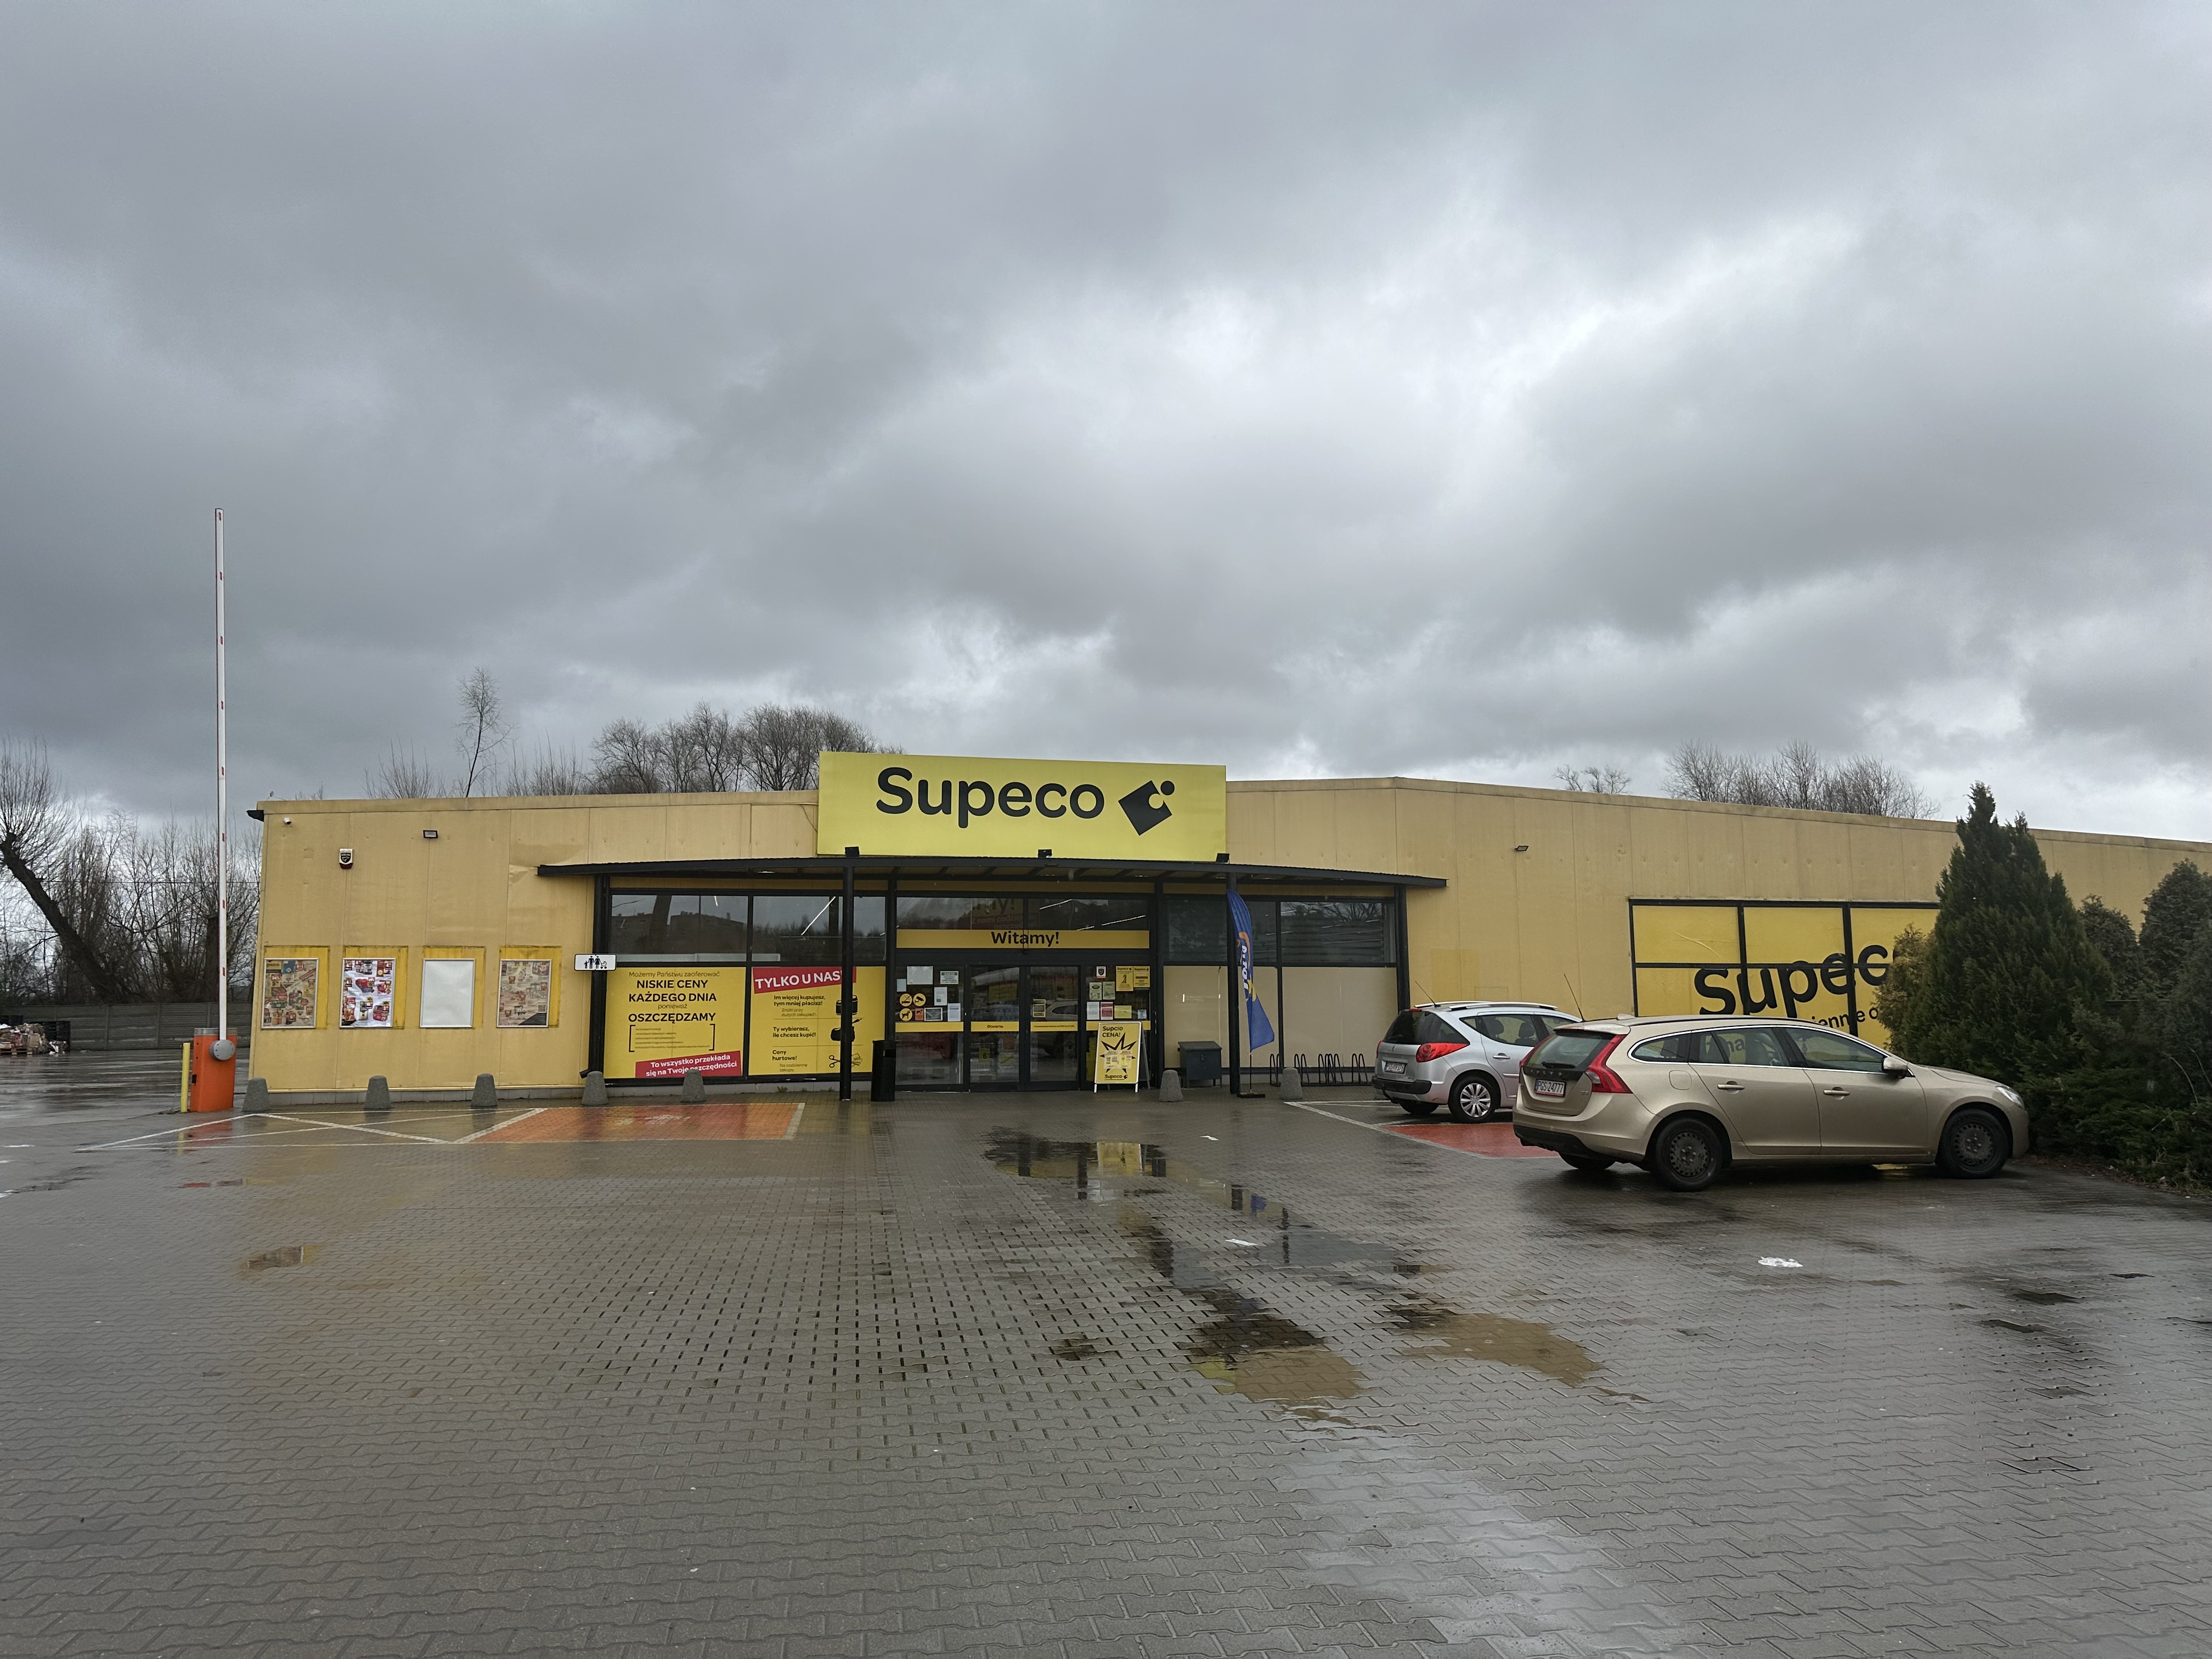 Blaszana hala stoi do dziś – po Dino przez lata działał tam Carrefour, teraz jest Supeco.